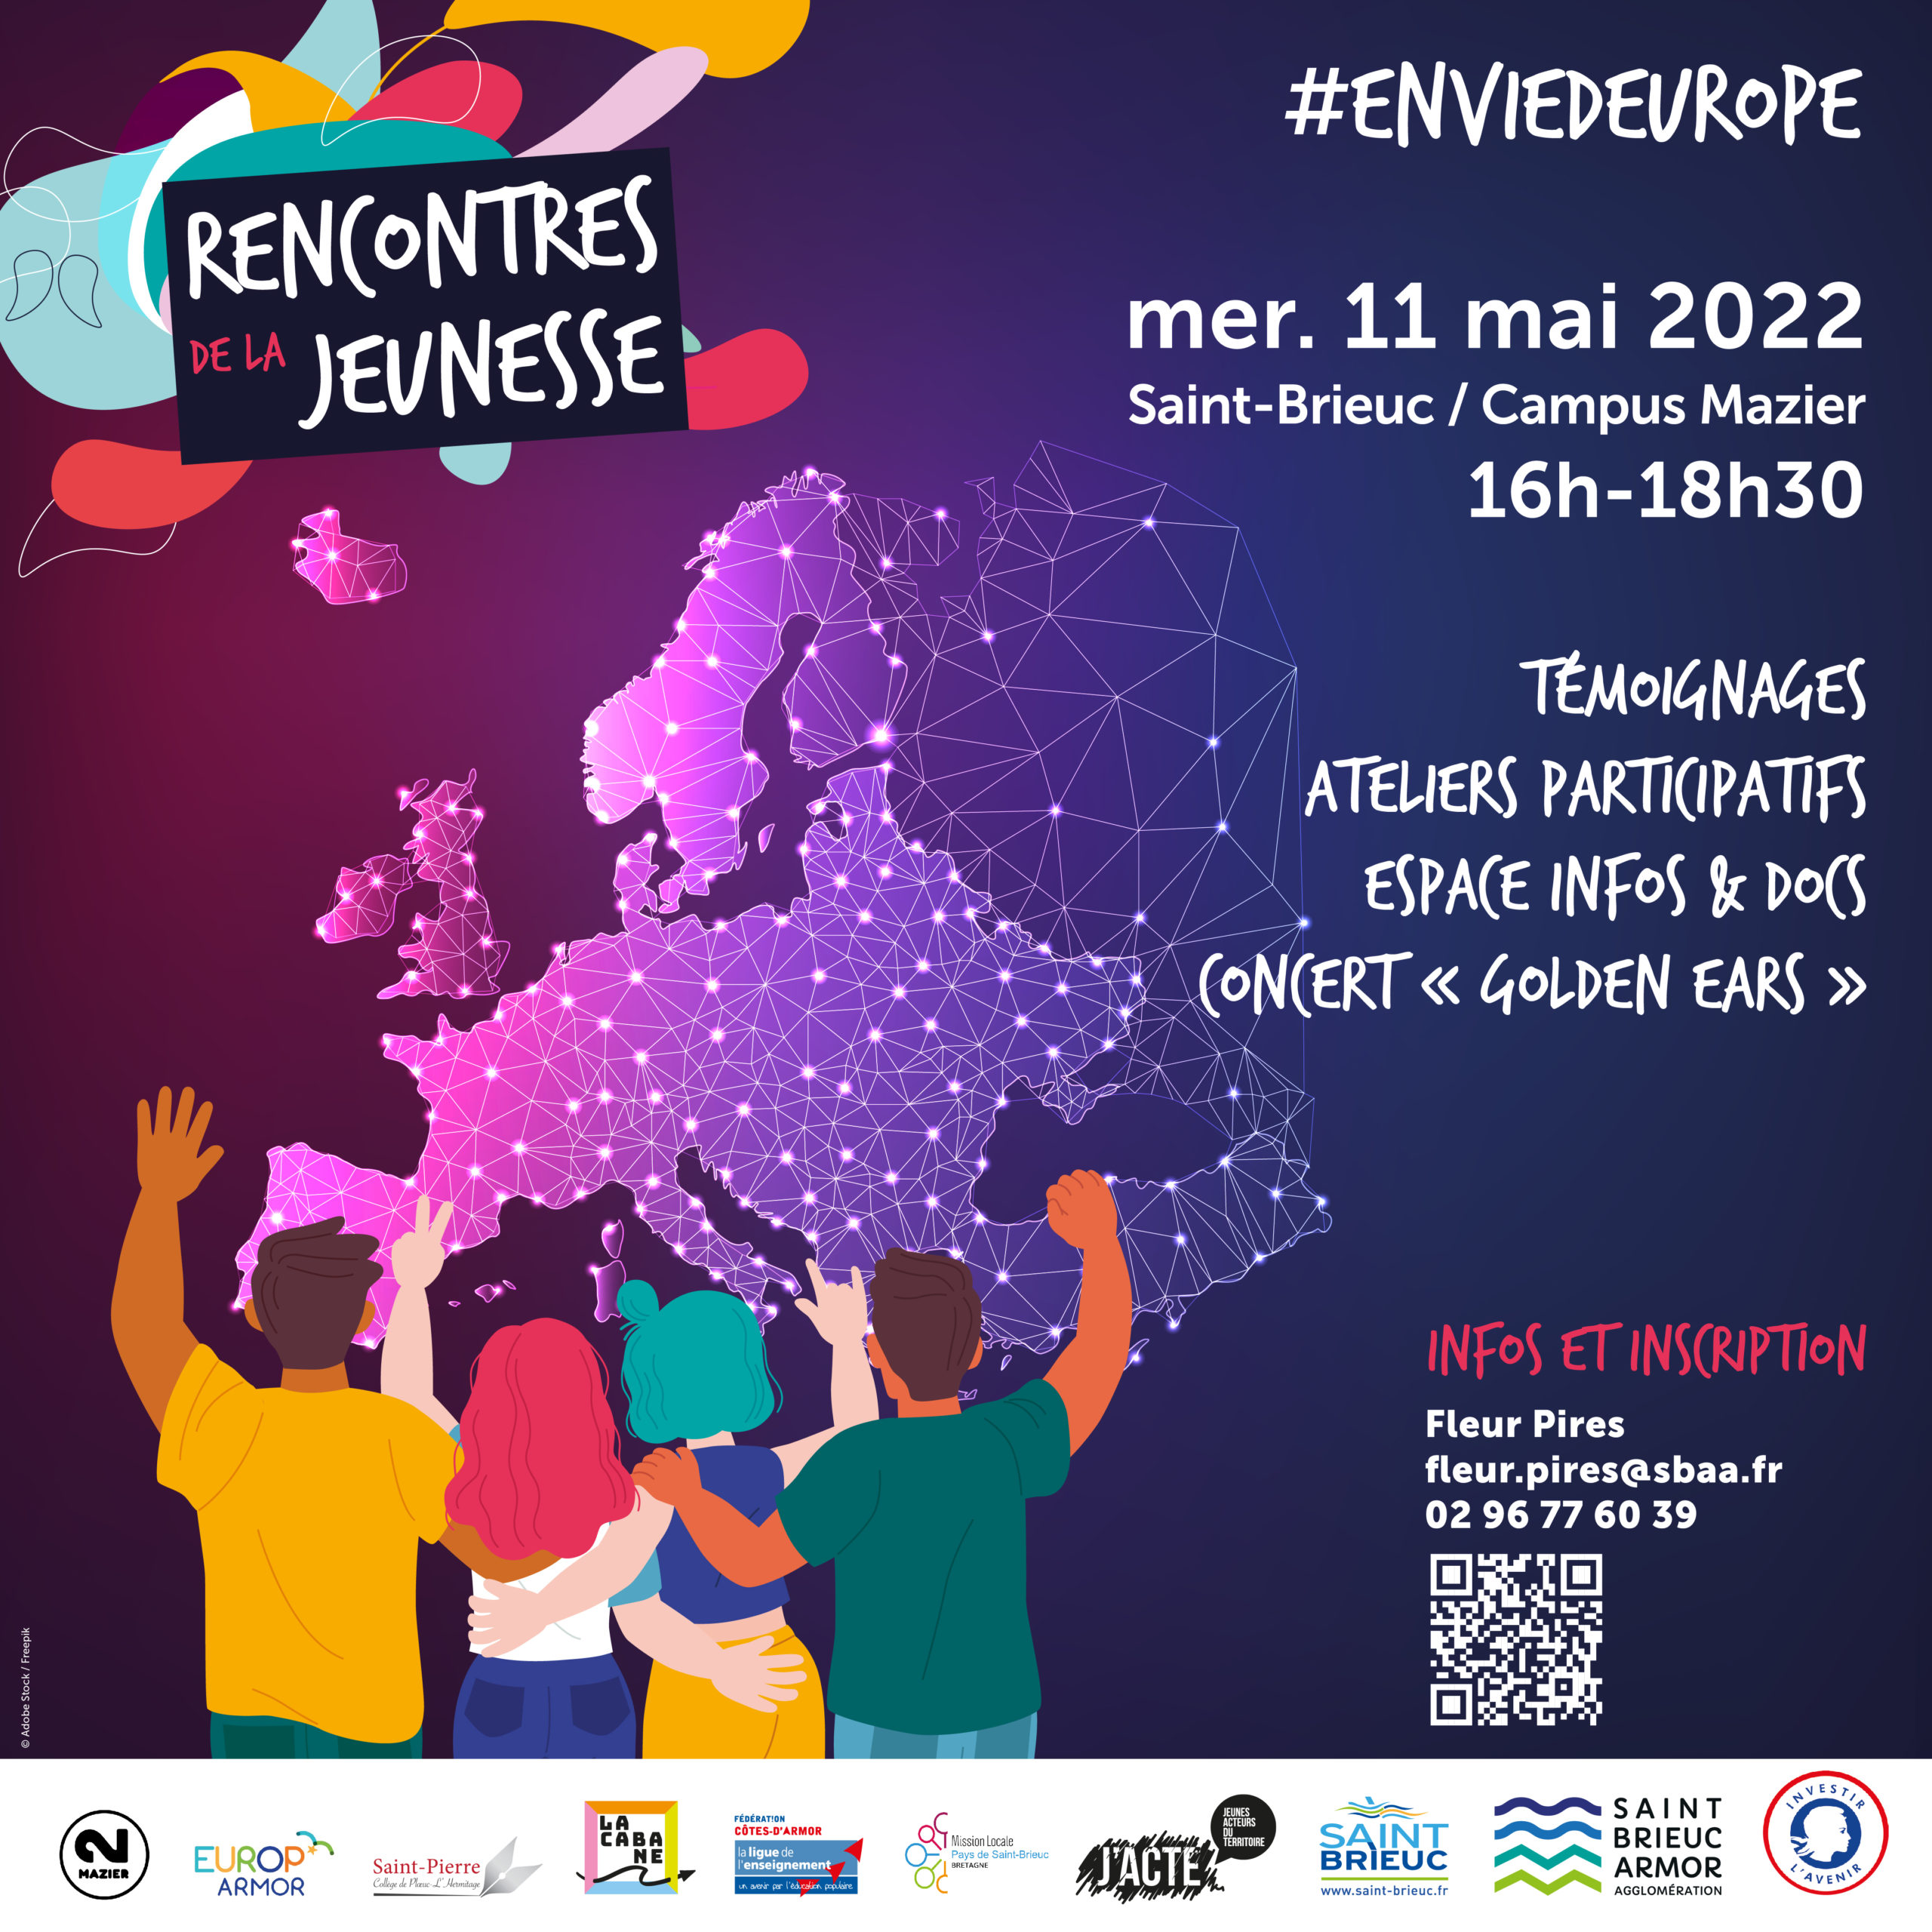 #EnviedEurope : rencontres de la jeunesse le 11 mai à Saint Brieuc